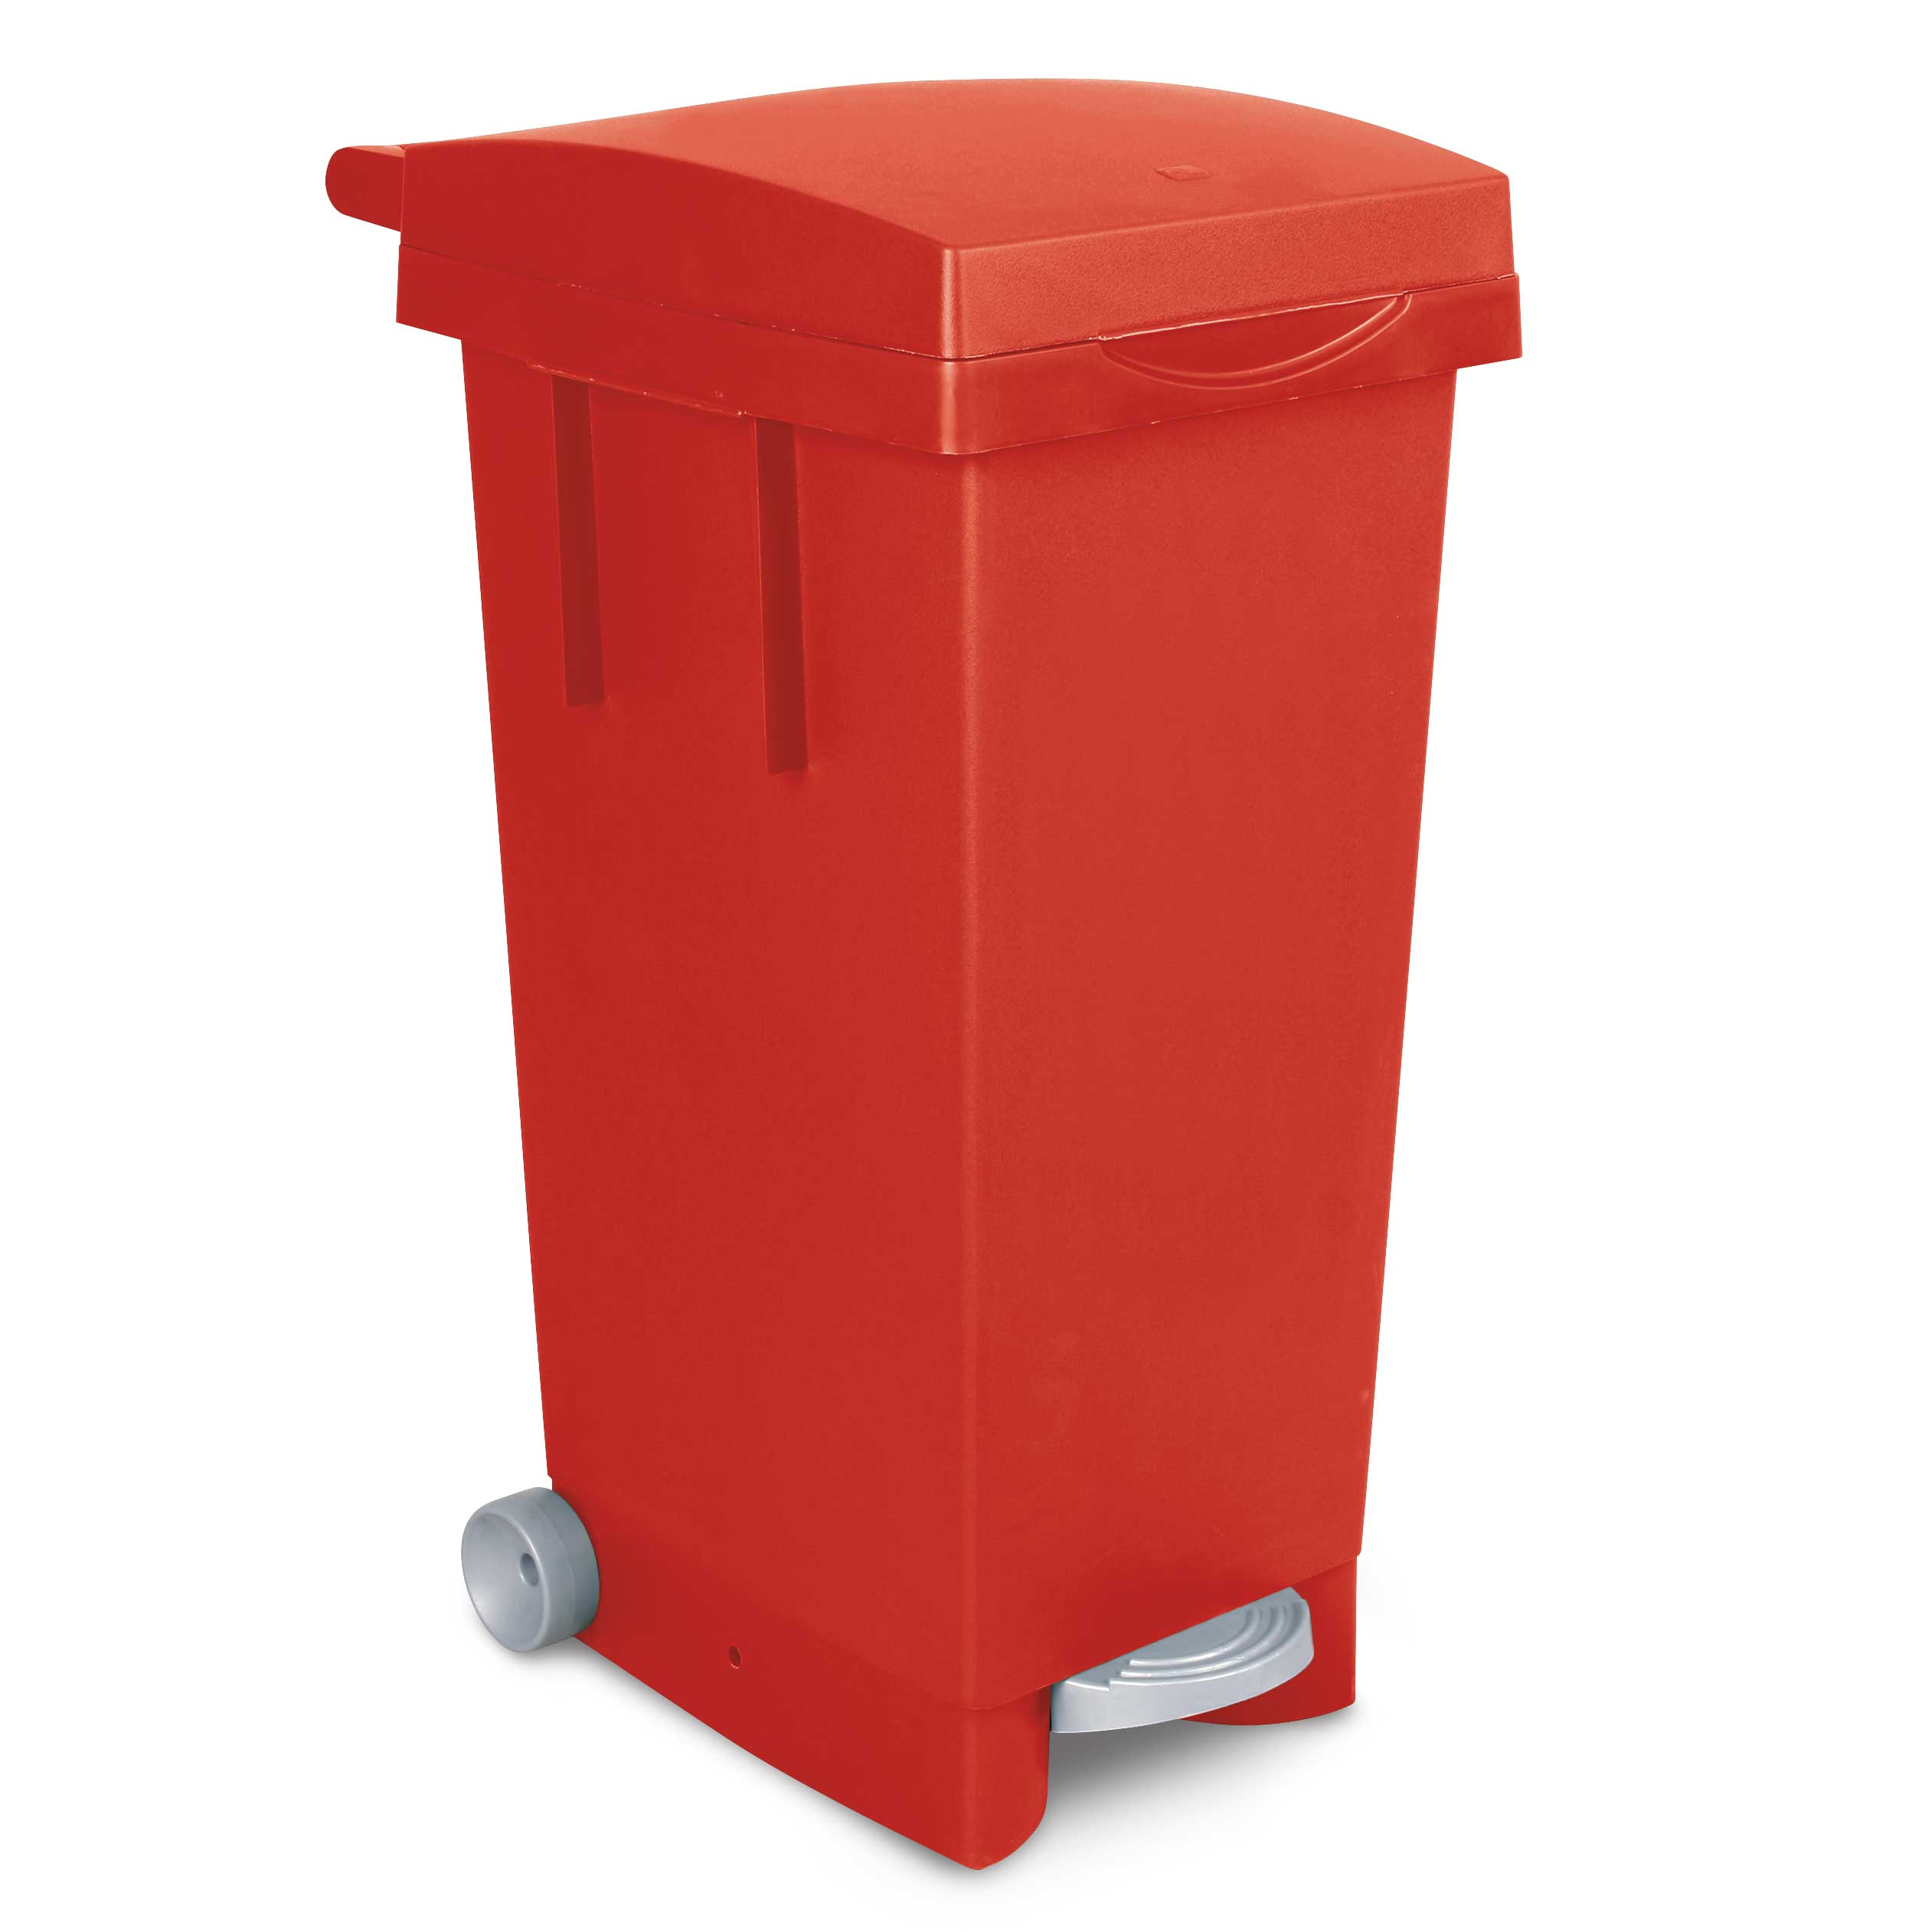 Tret-Abfallbehälter mit Rollen, BxTxH 370 x 510 x 790 mm, Inhalt 80 Liter,  rot, Rolltonnen, Tret-Abfallbehälter, Abfall- und Wertstoff, Umwelt